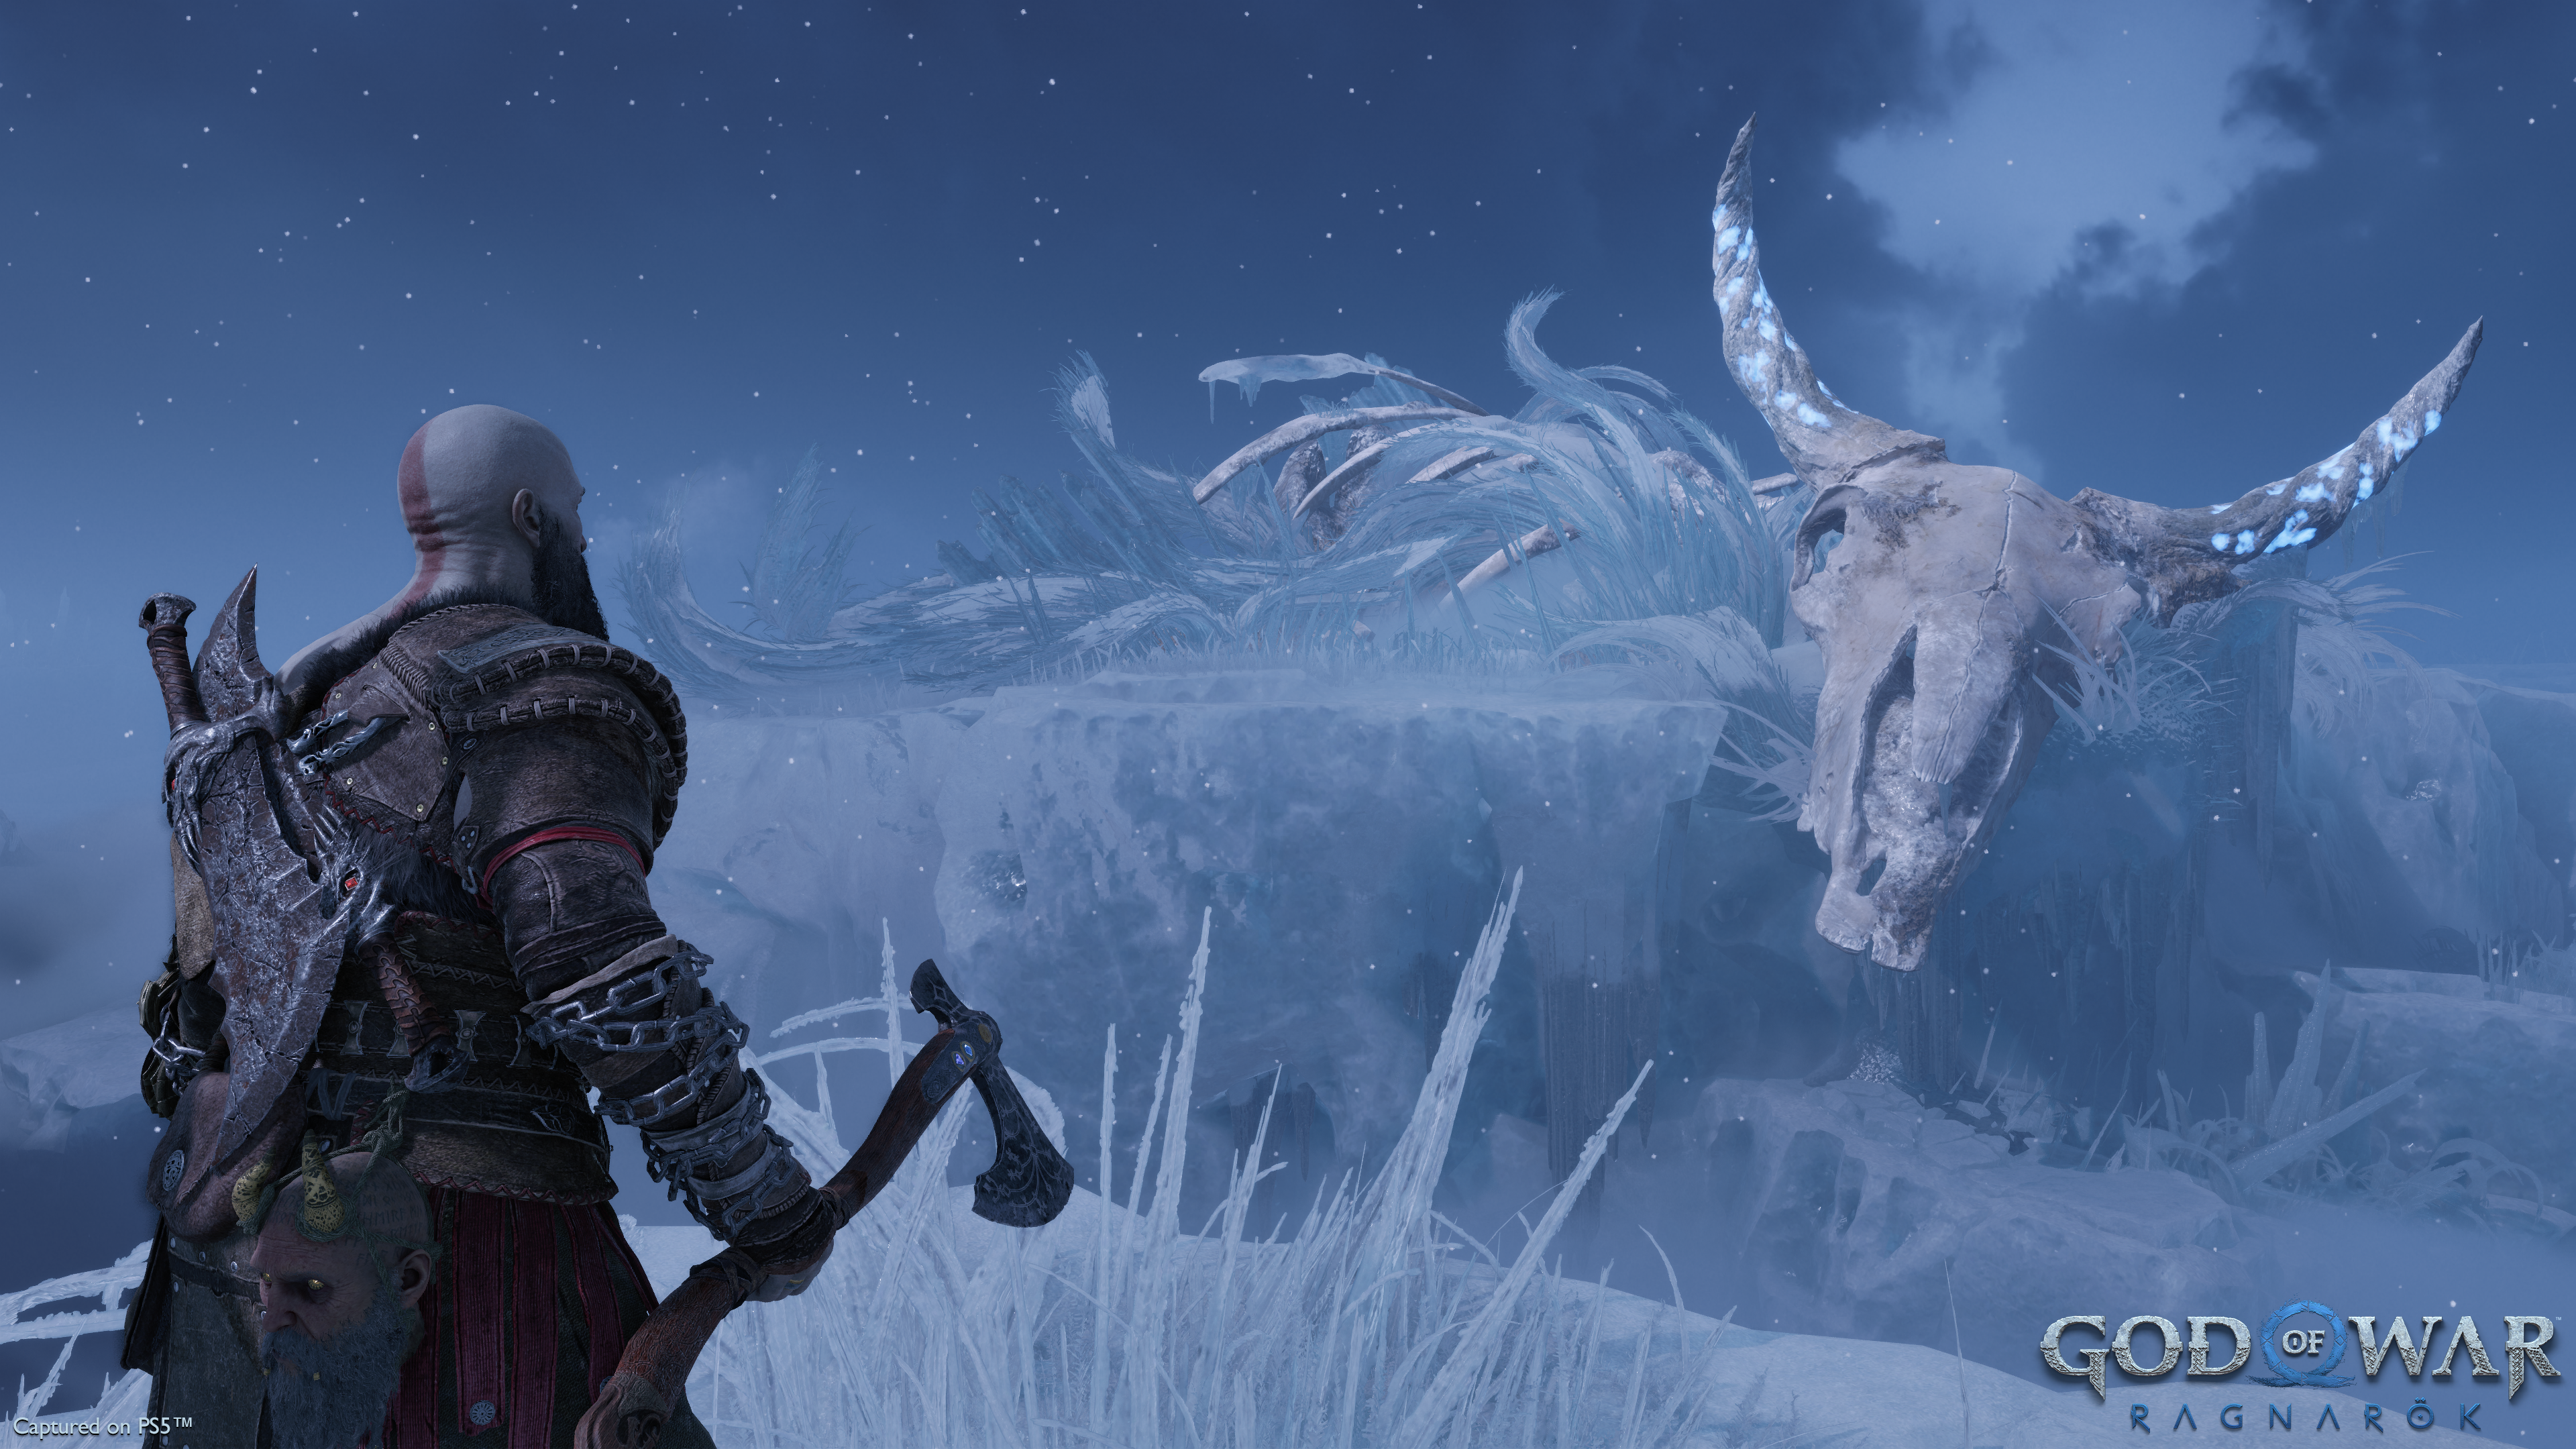 Kratos surveys a giant skeleton in God of War Ragnarok